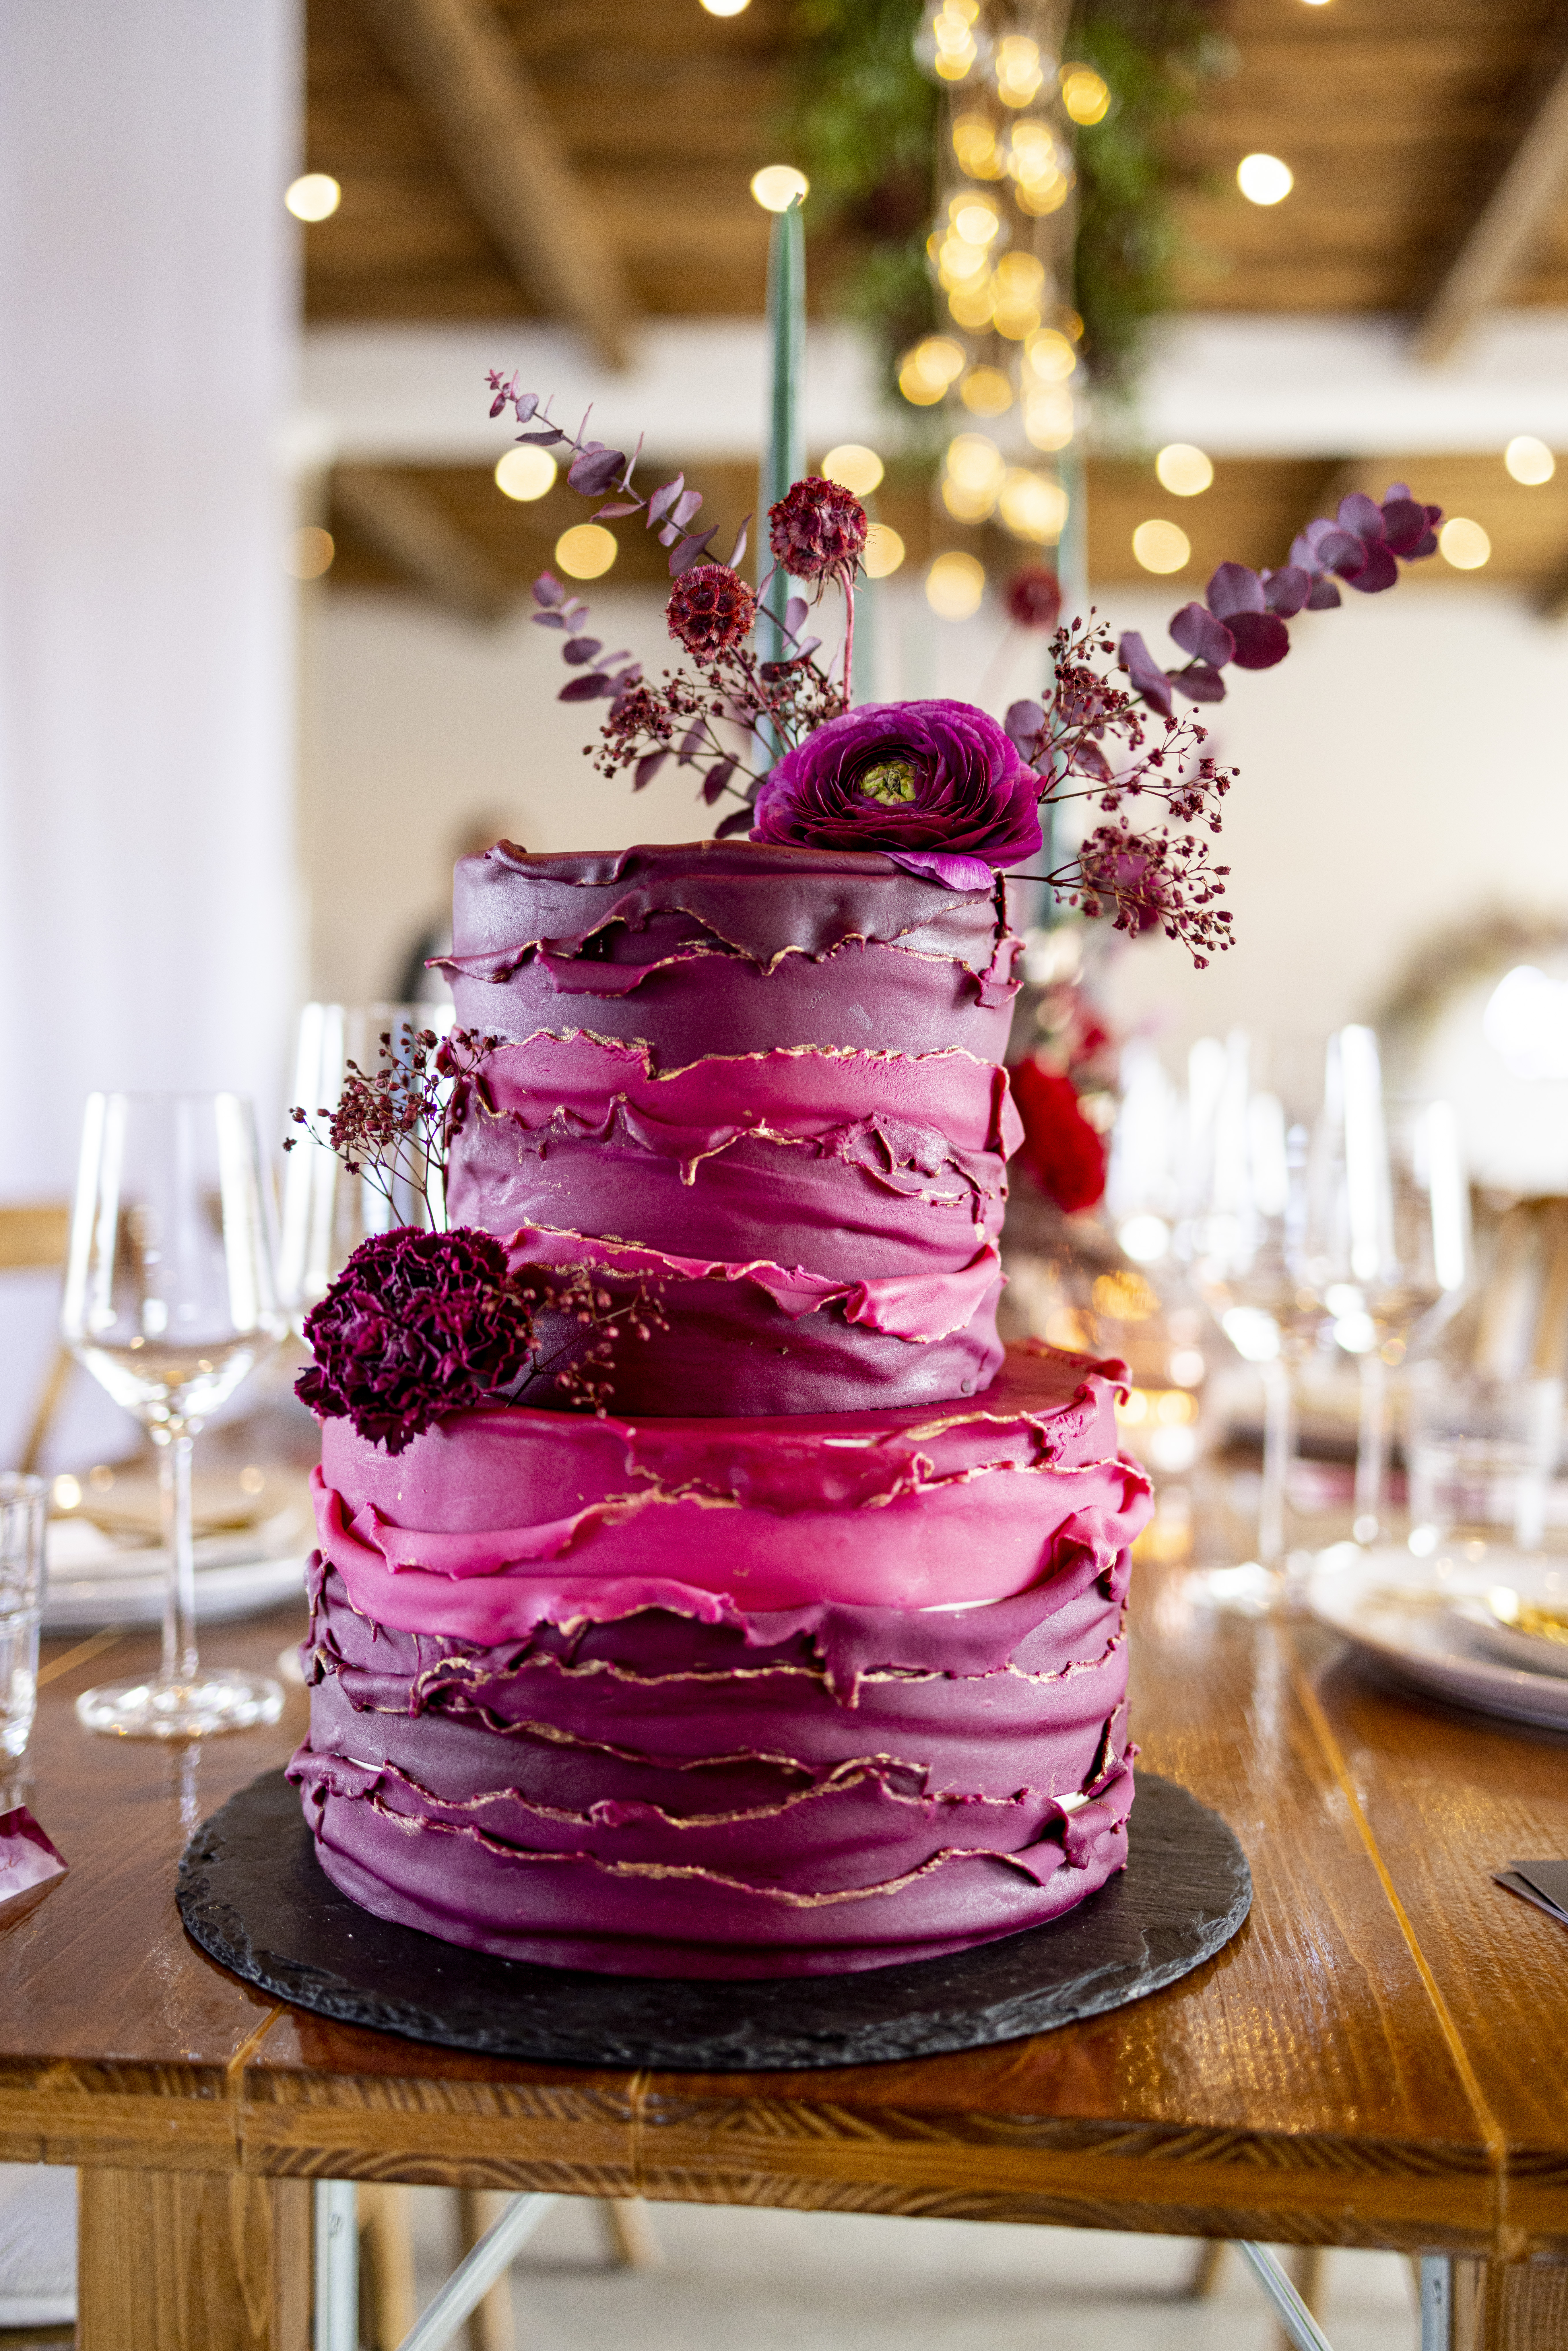 Un gros gâteau | Source : Getty Images